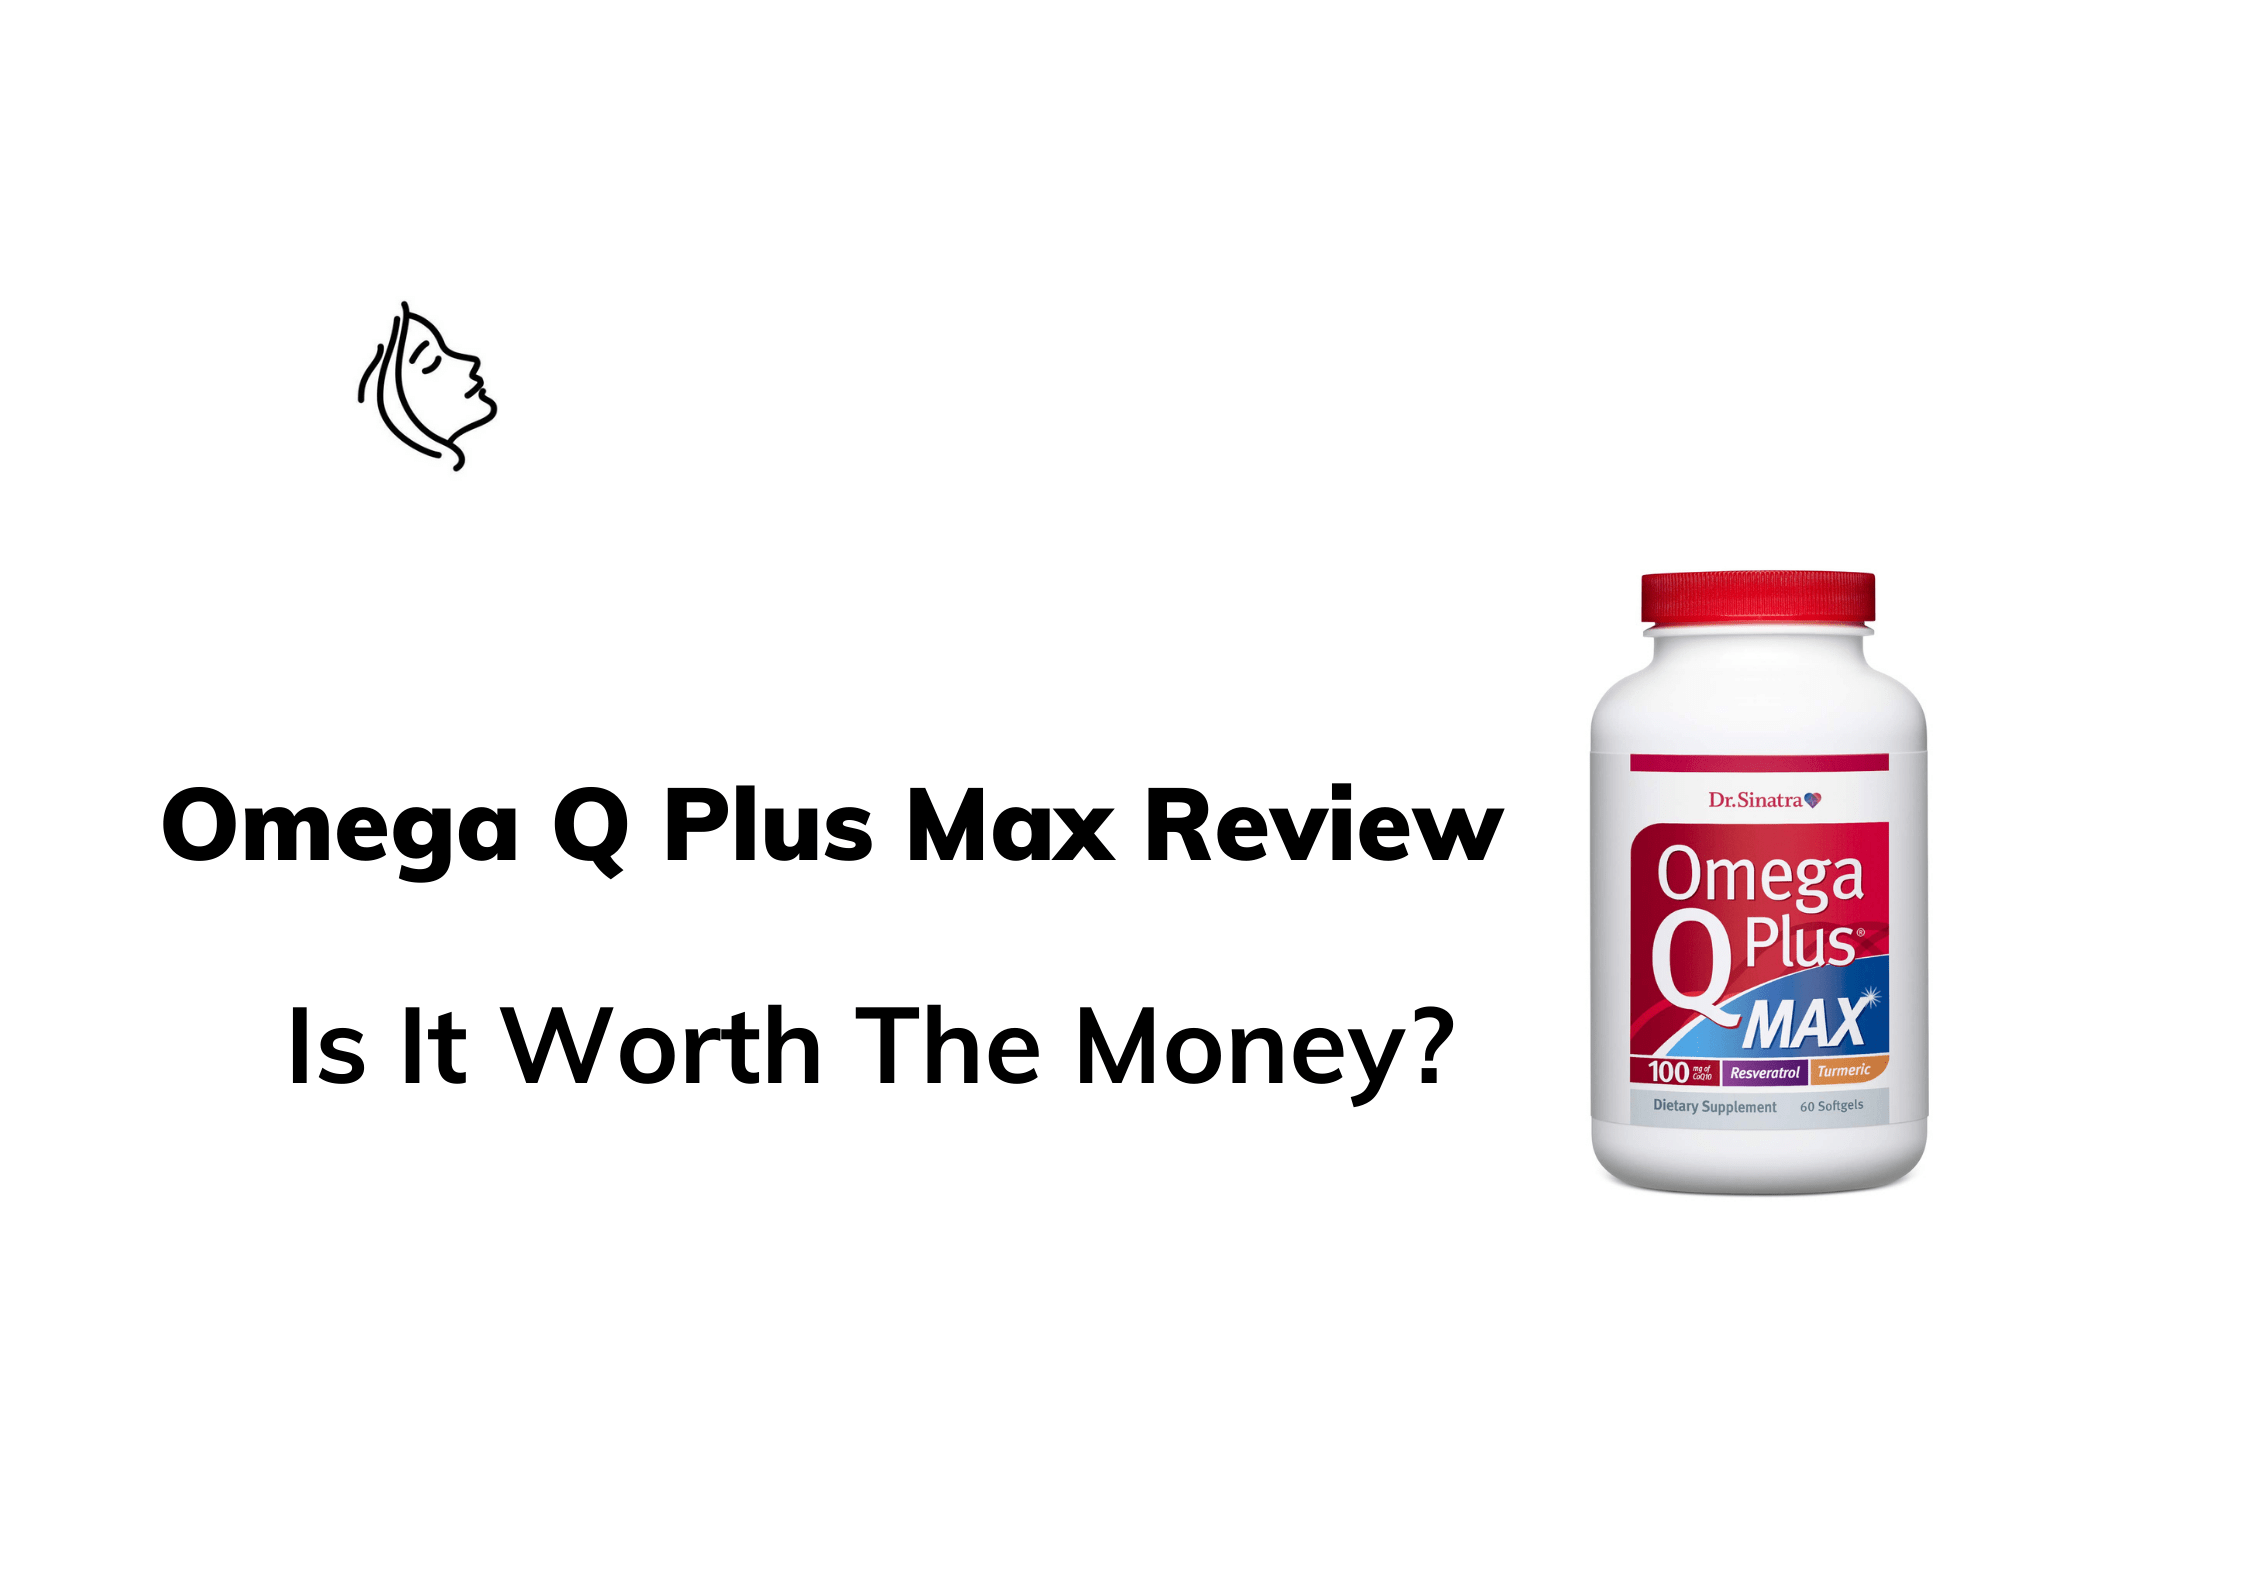 Omega Q Plus Max Reviews